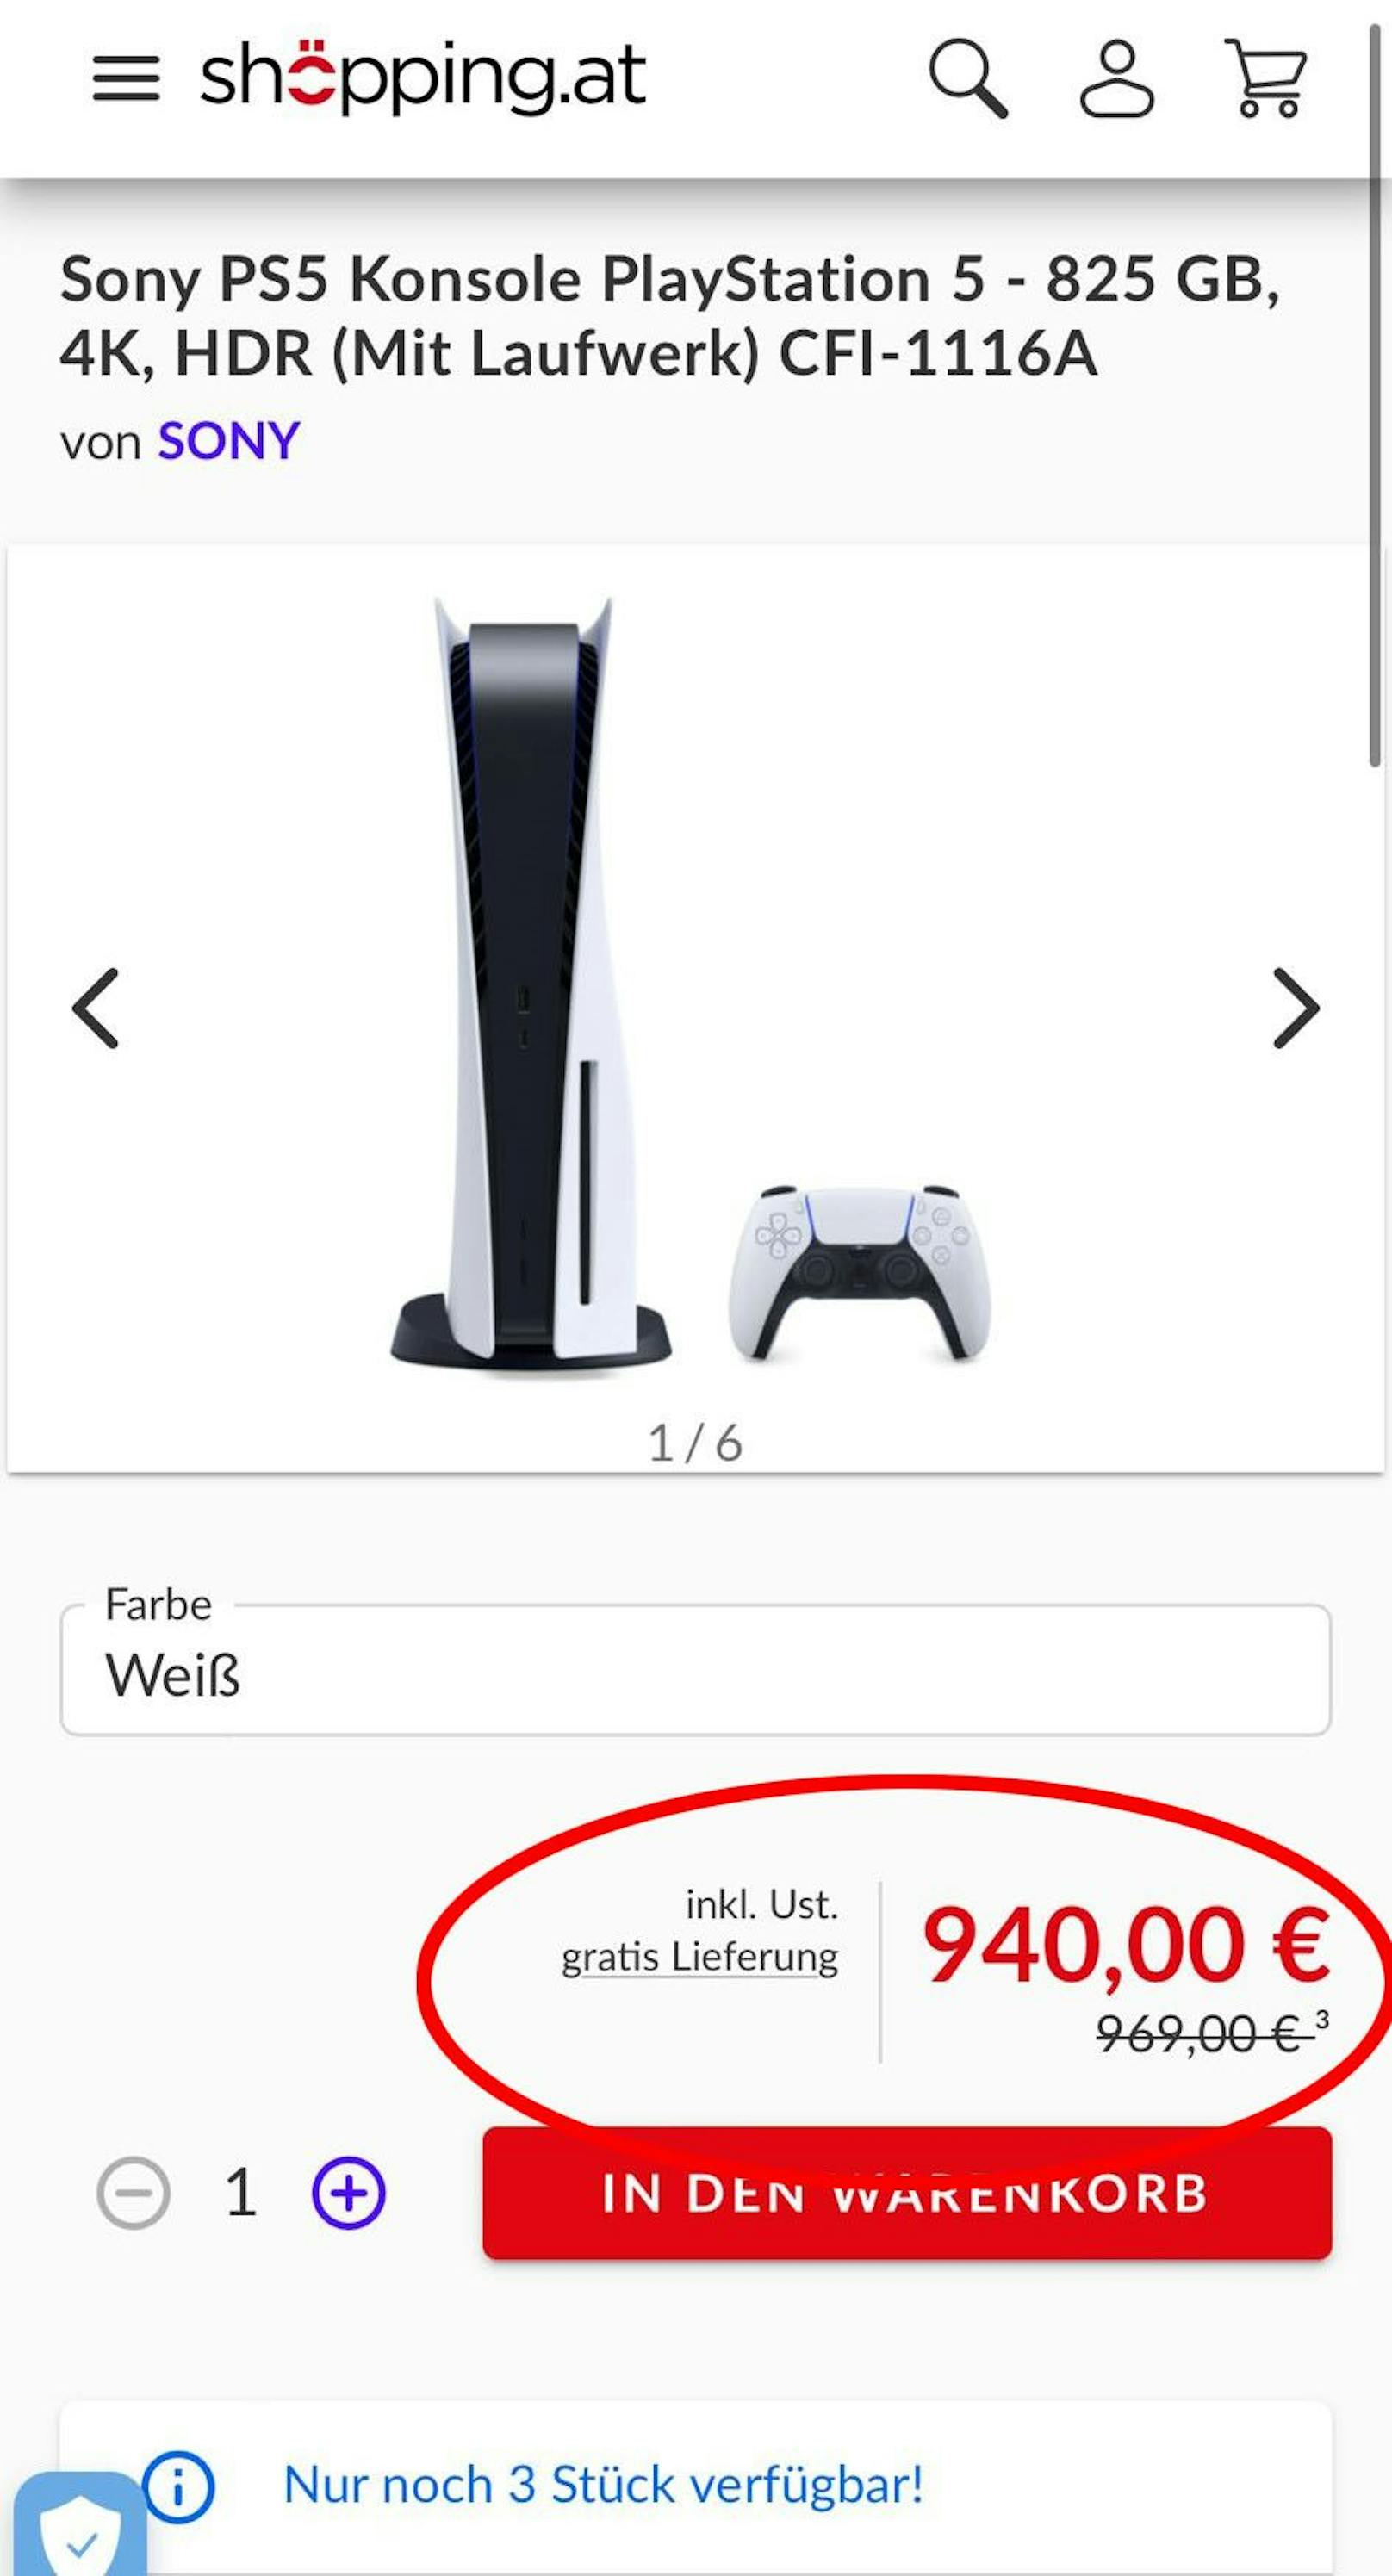 Ein österreichischer E-Commerce-Dienst bietet die PS5 für knapp tausend Euro an.